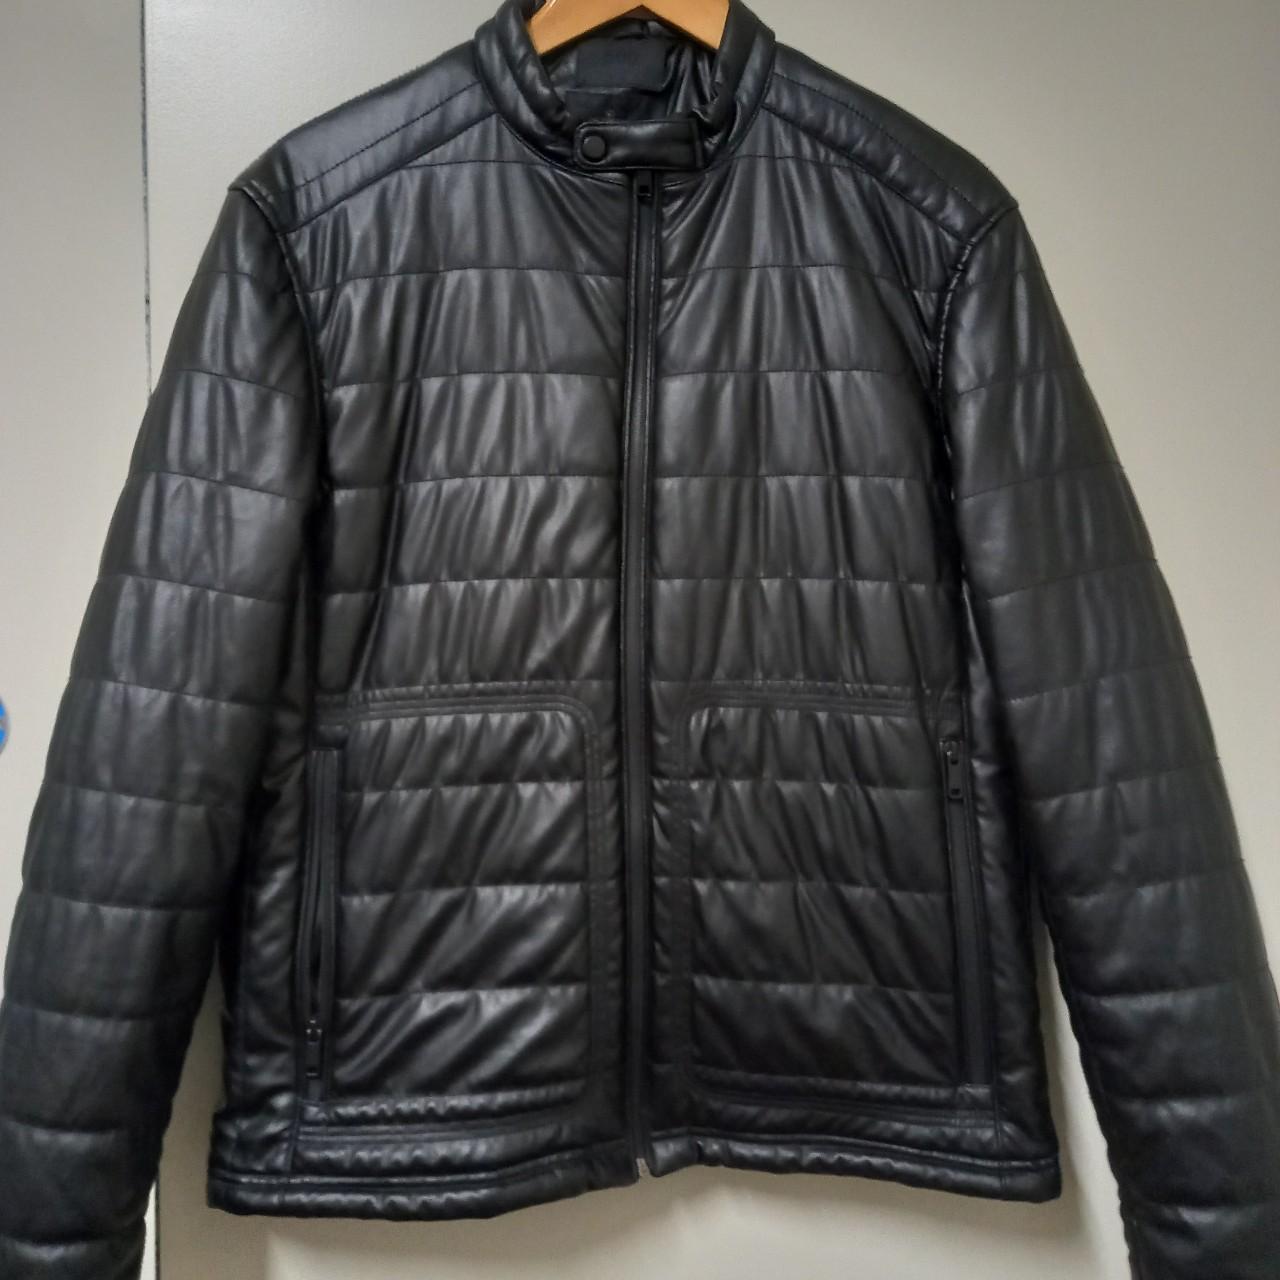 Maison cinqcent 500 jacket, Black, excellent... - Depop